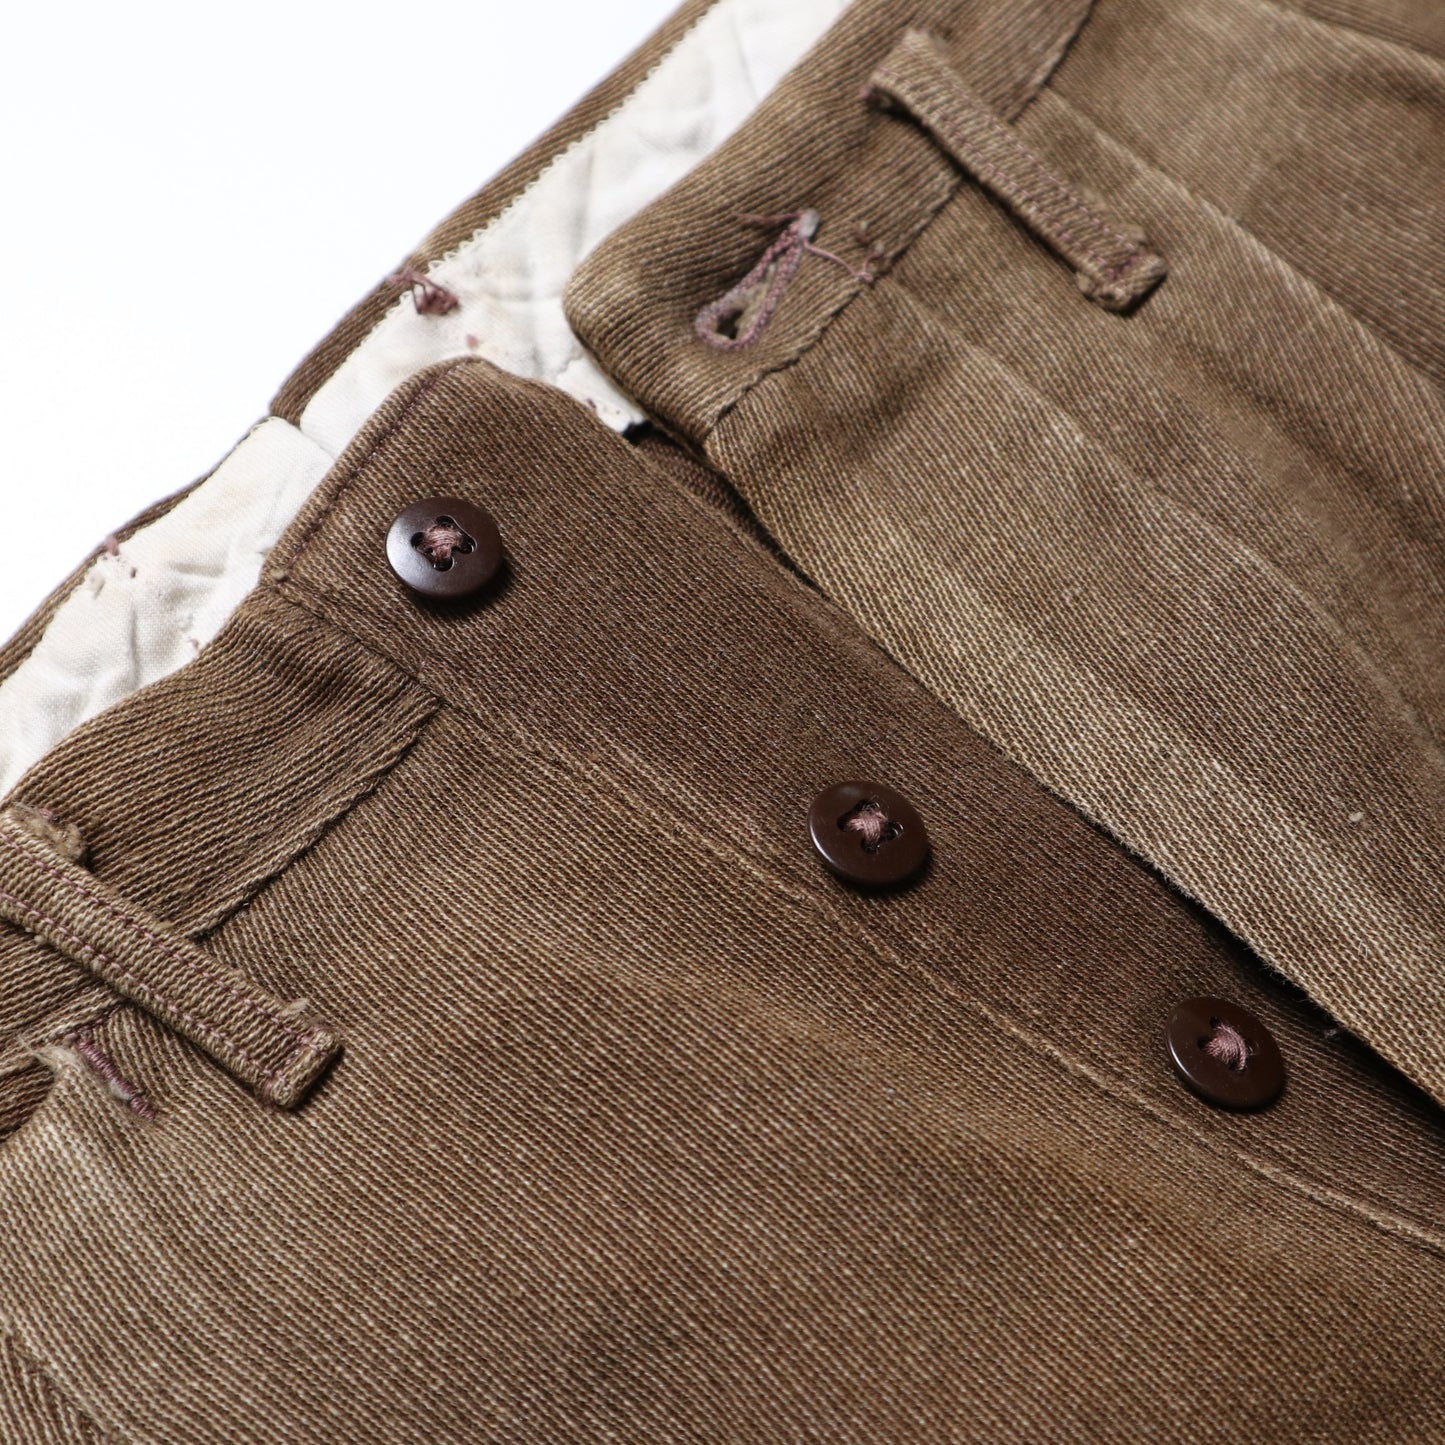 (24W) 30-40s 美國咖啡色排扣工作褲